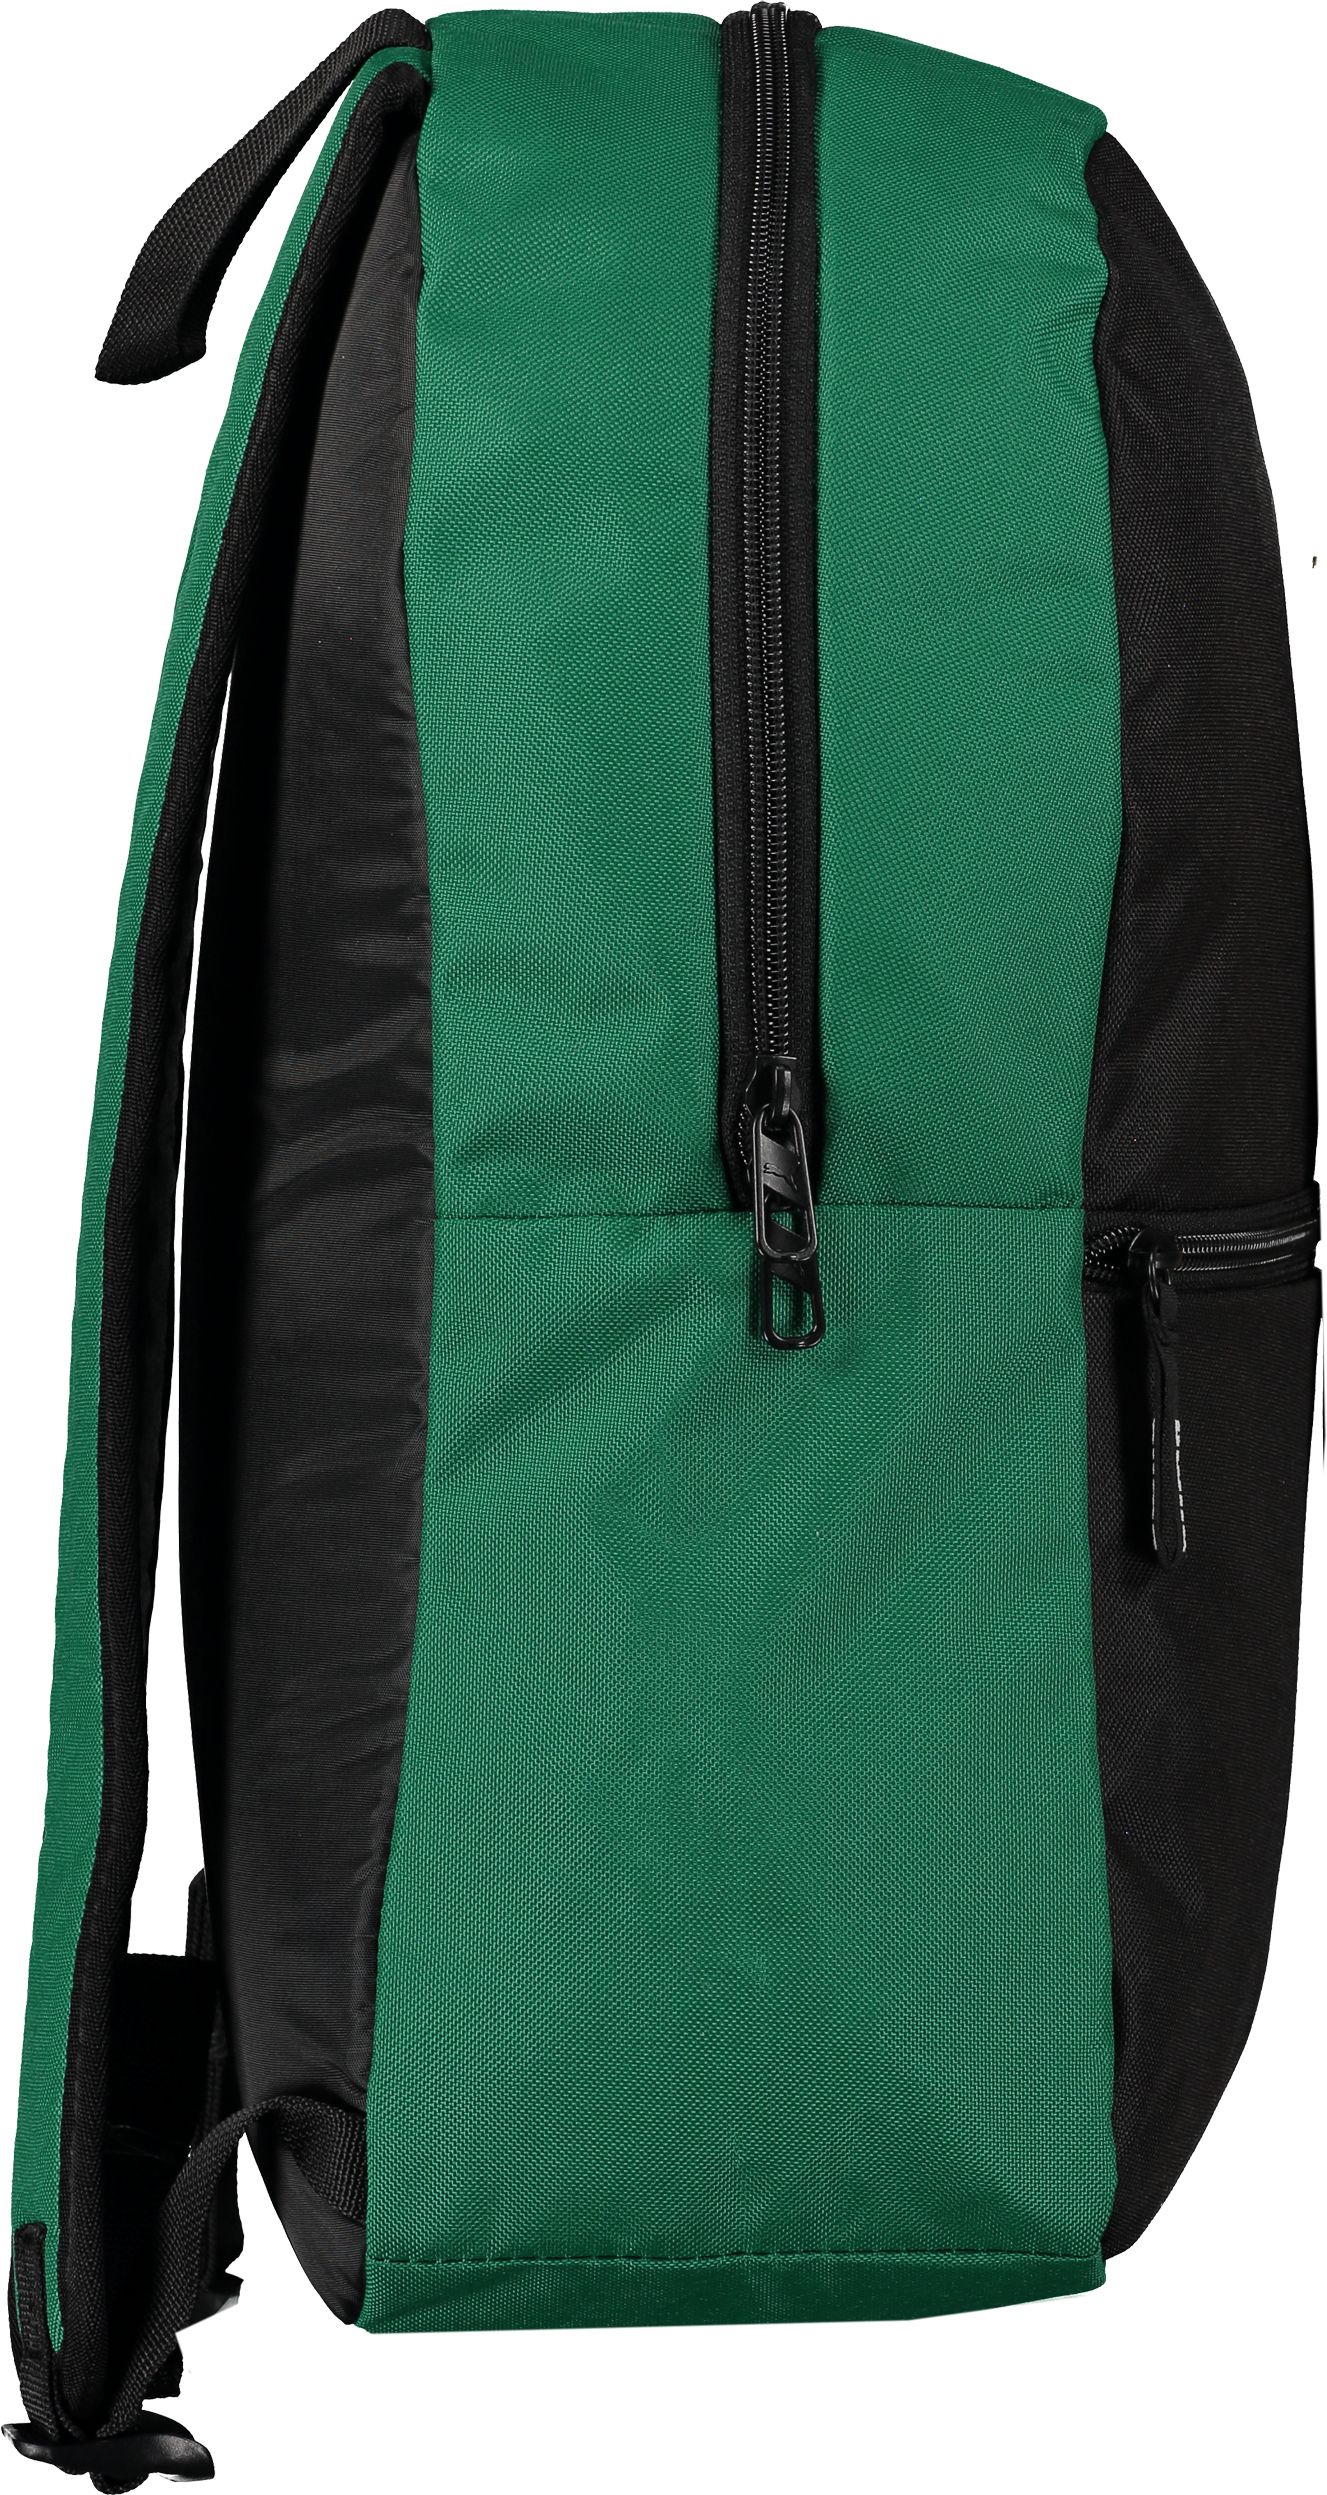 PUMA, teamGOAL Backpack